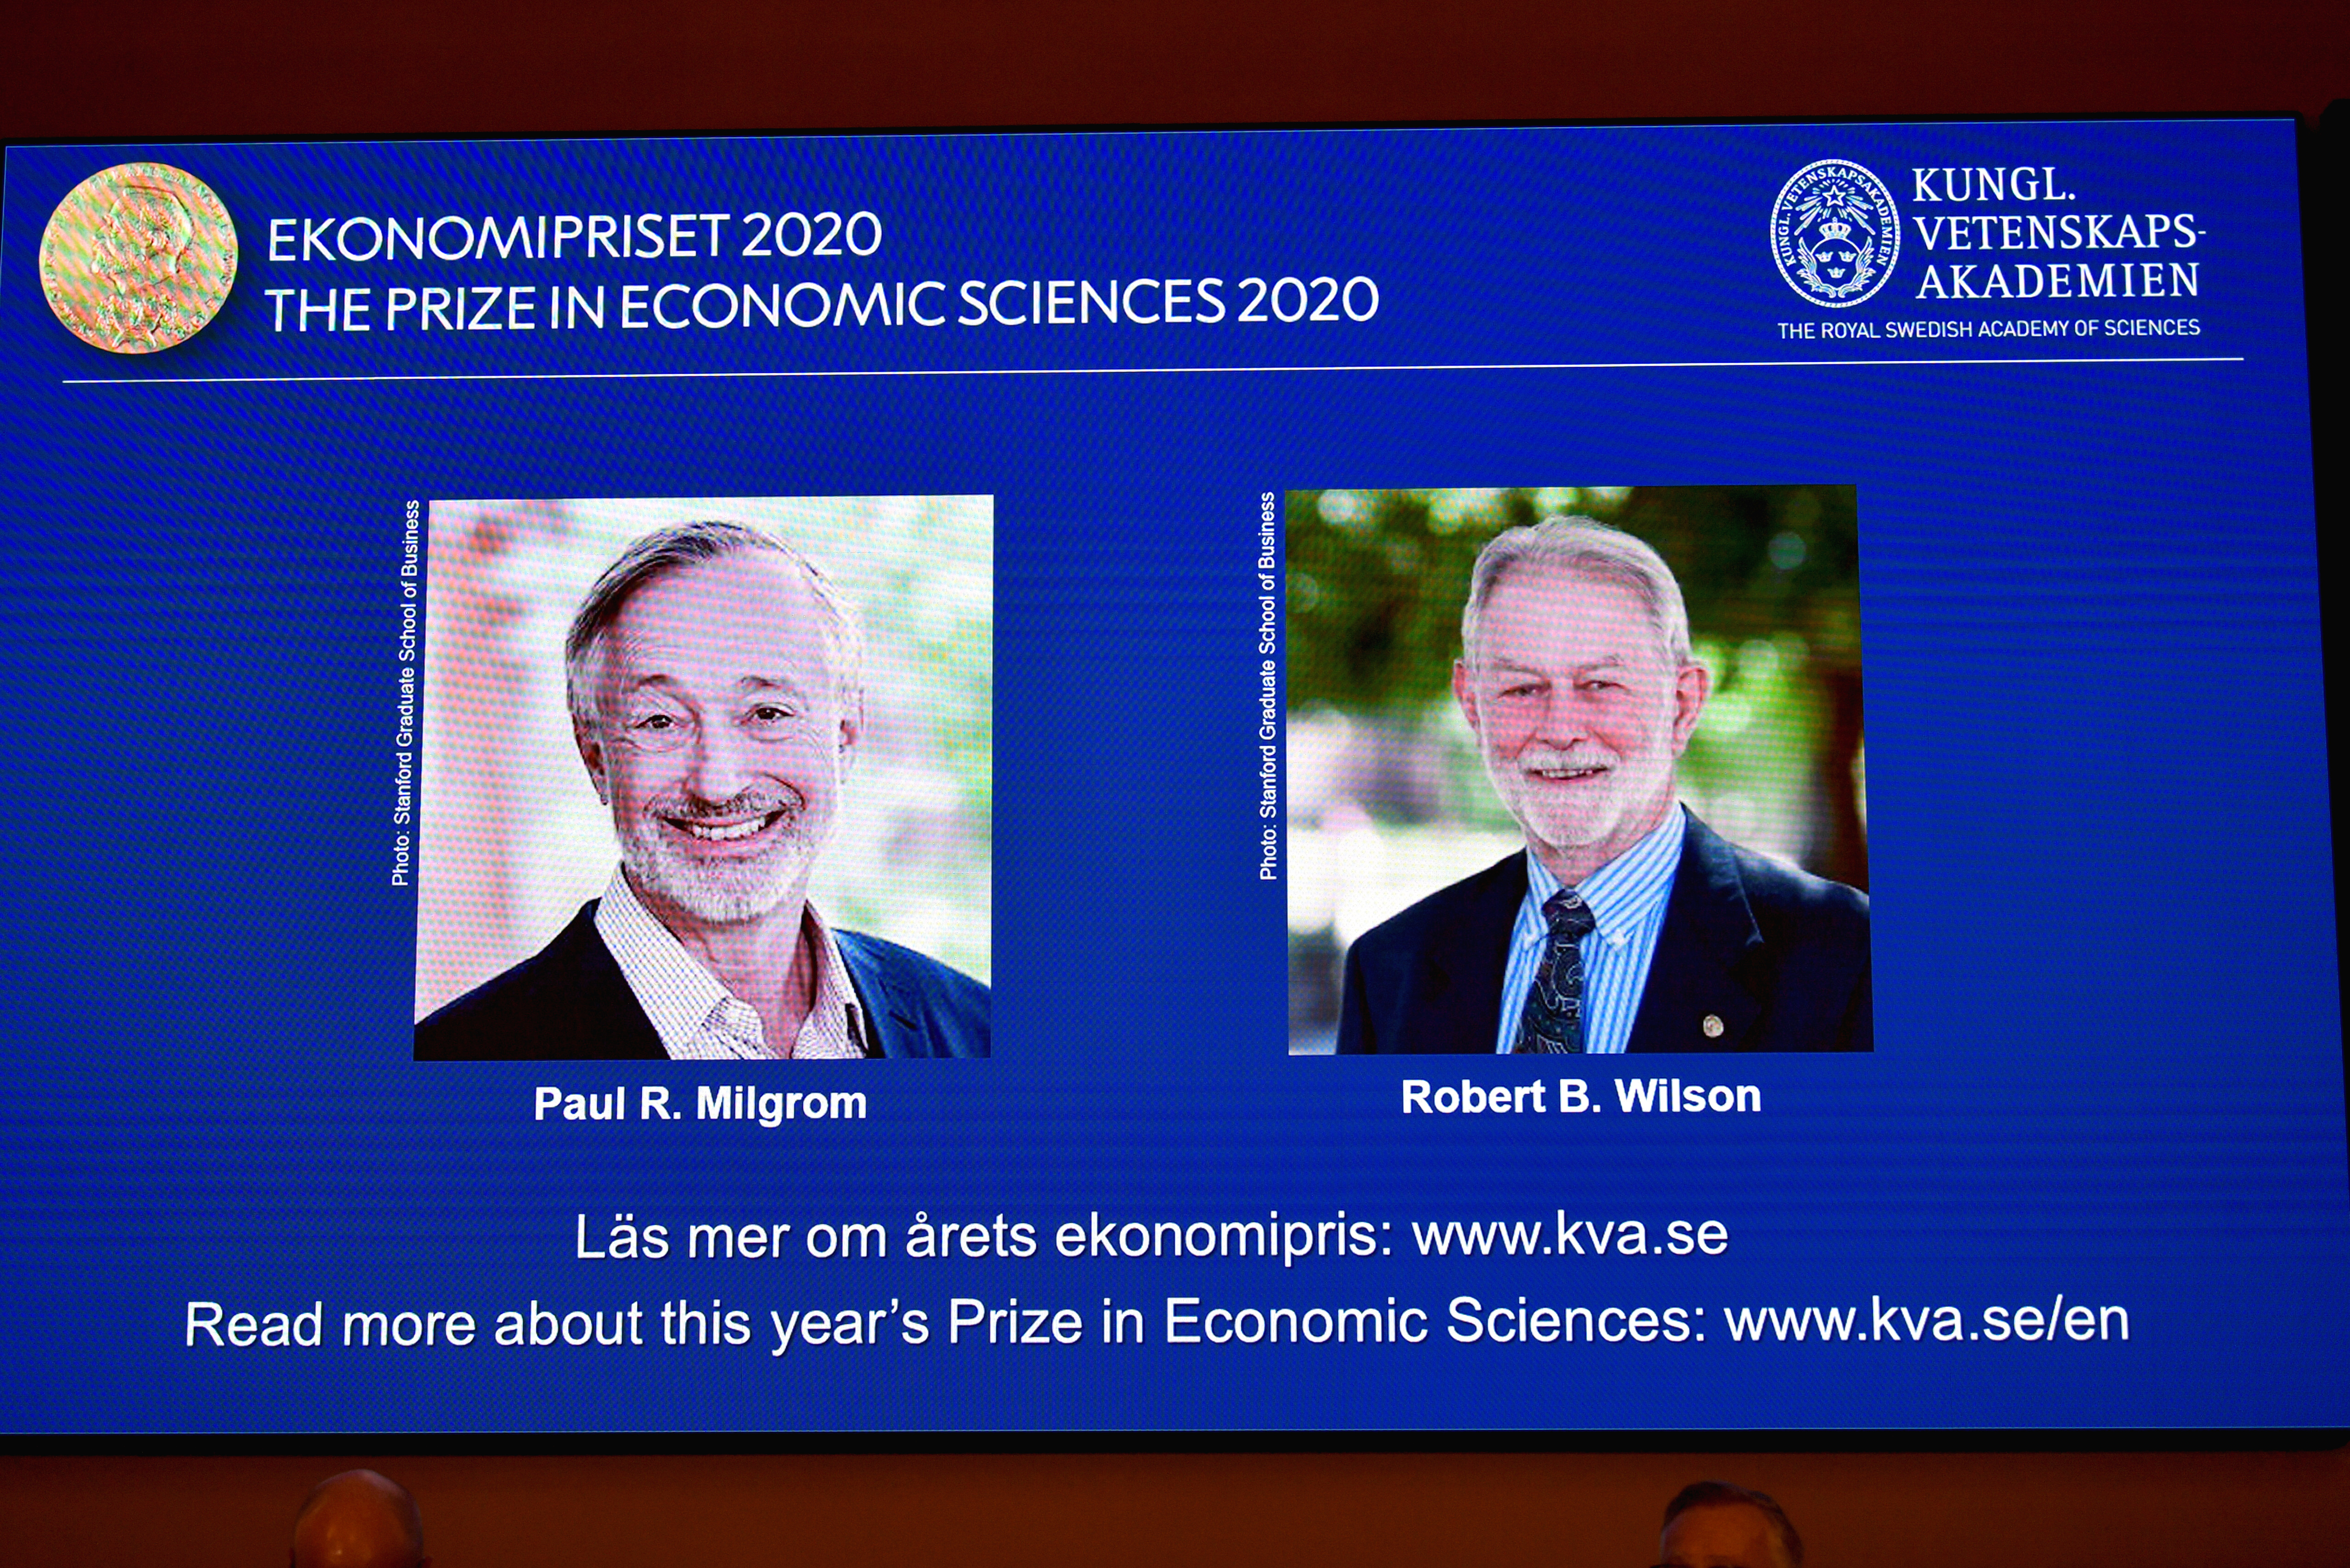 El Premio Nobel de Economía, para Paul Milgrom y Robert Wilson